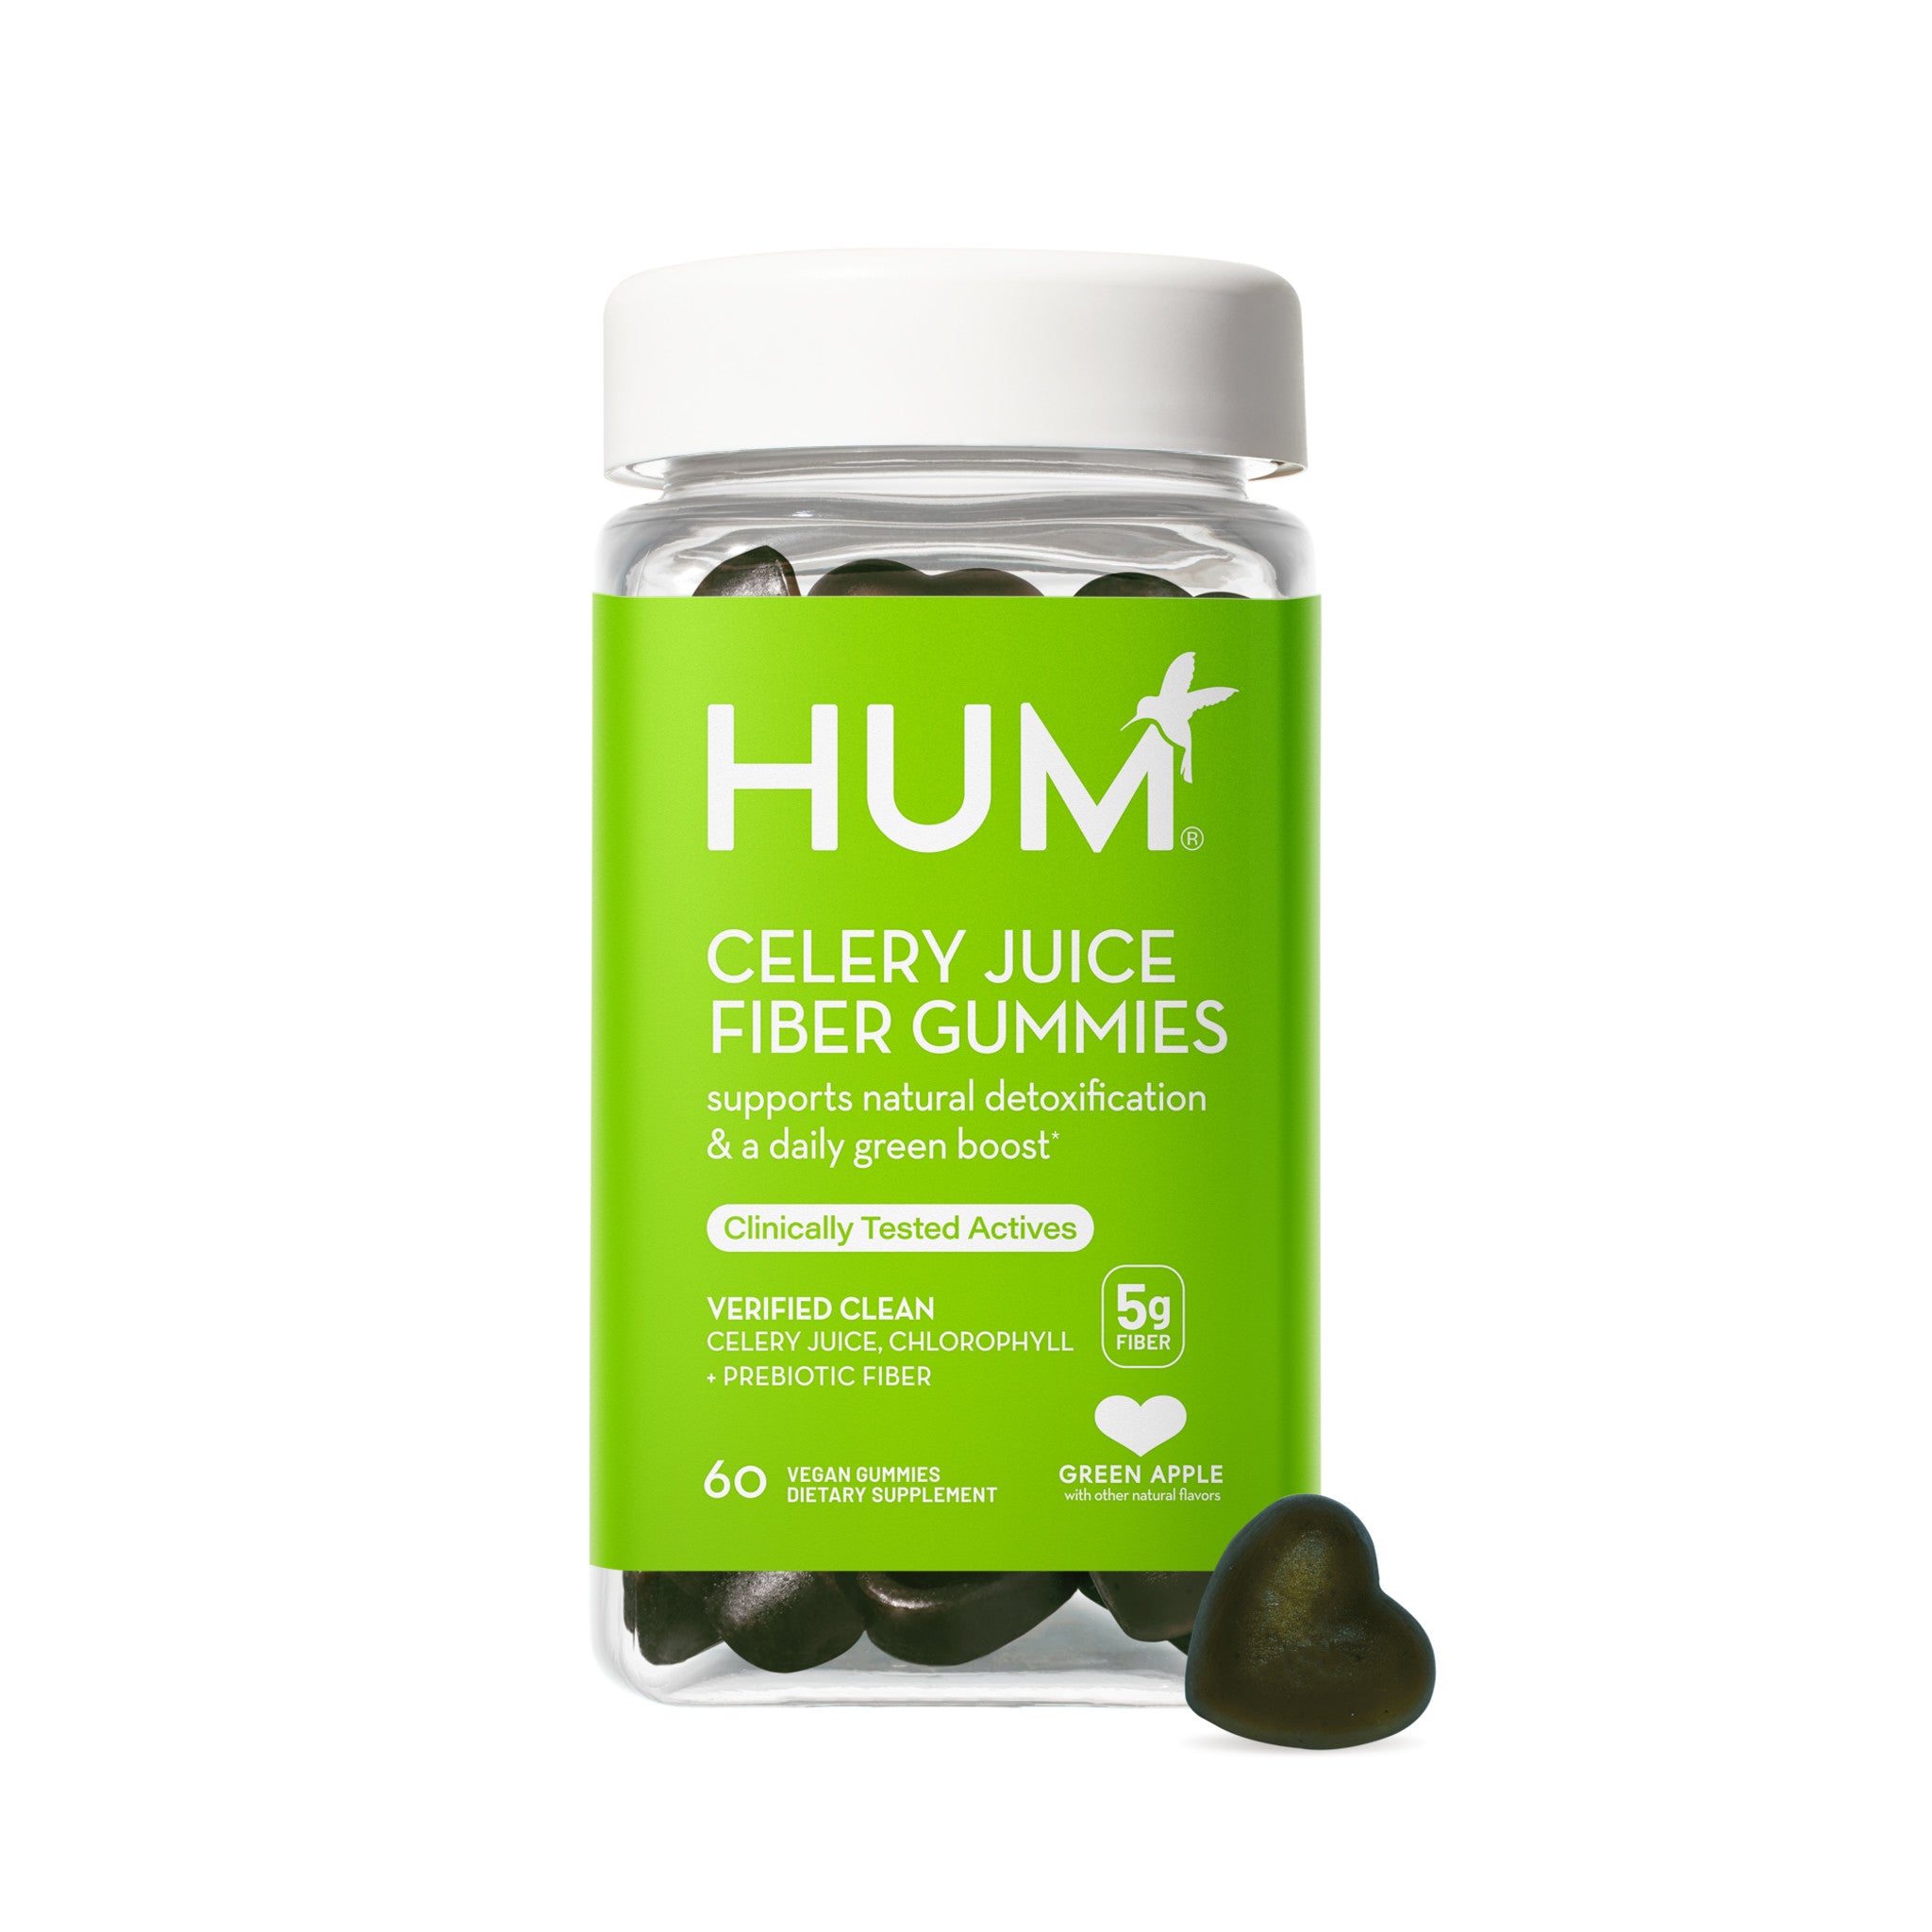 Hum Celery Juice Fiber Gummies main image.